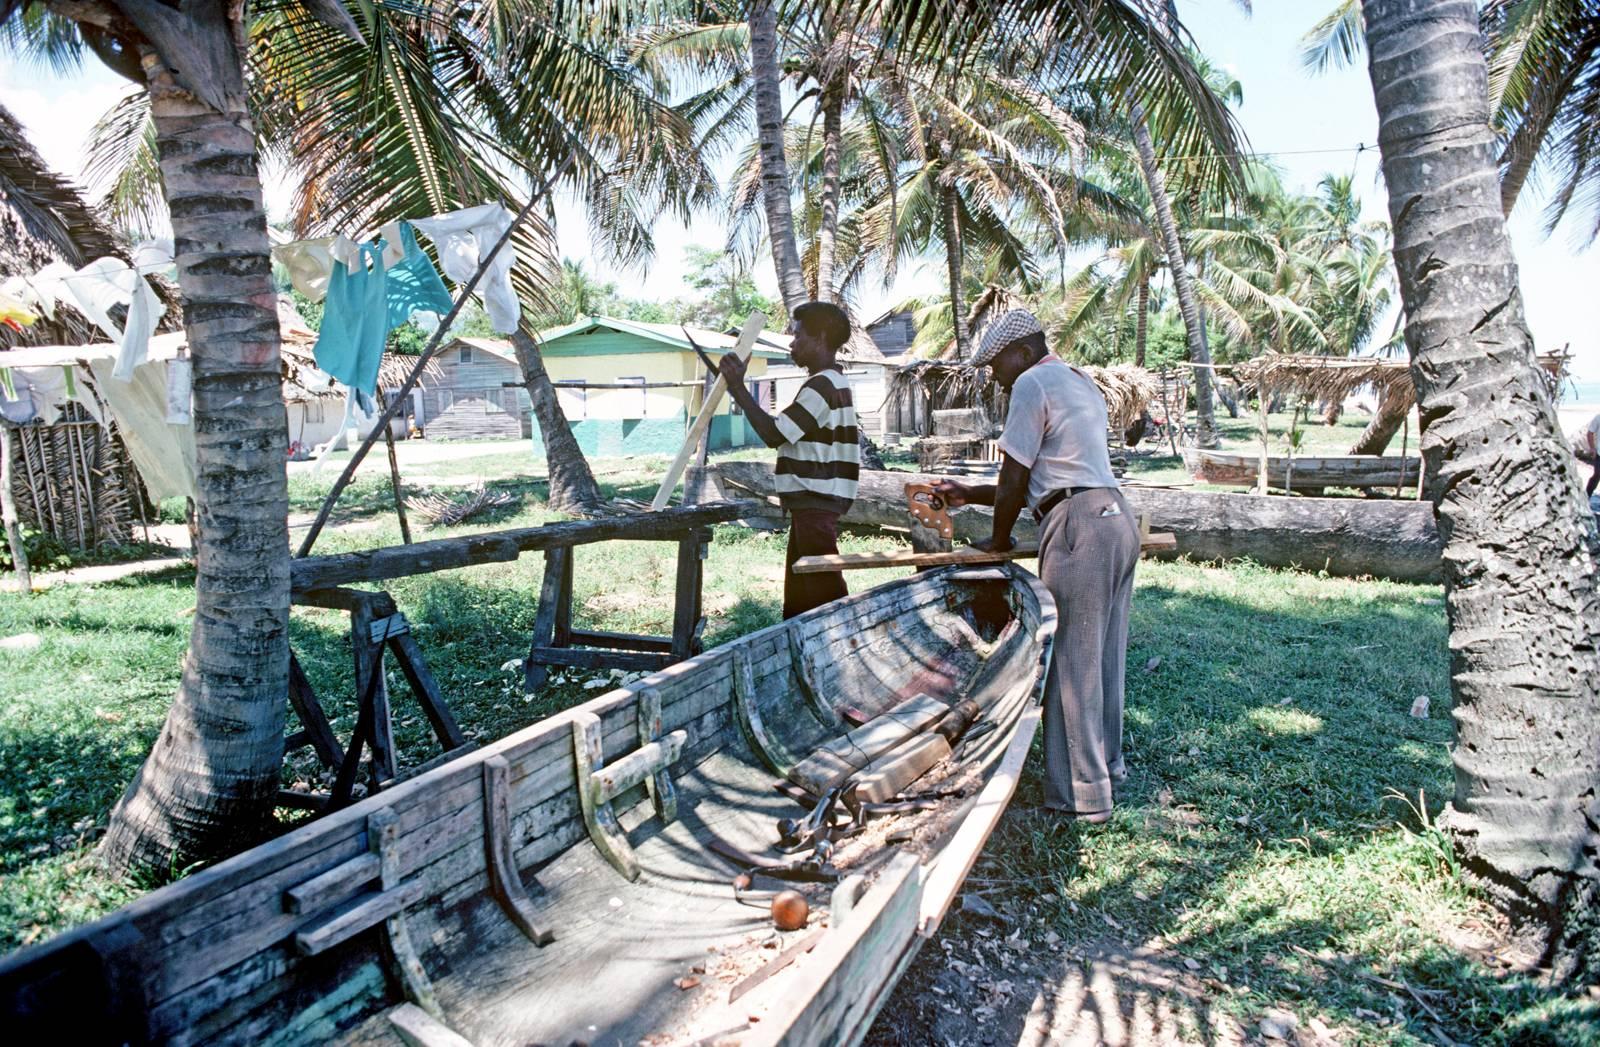 Color Photograph Alain Le Garsmeur - Building de bateaux de la côte de Mosquito